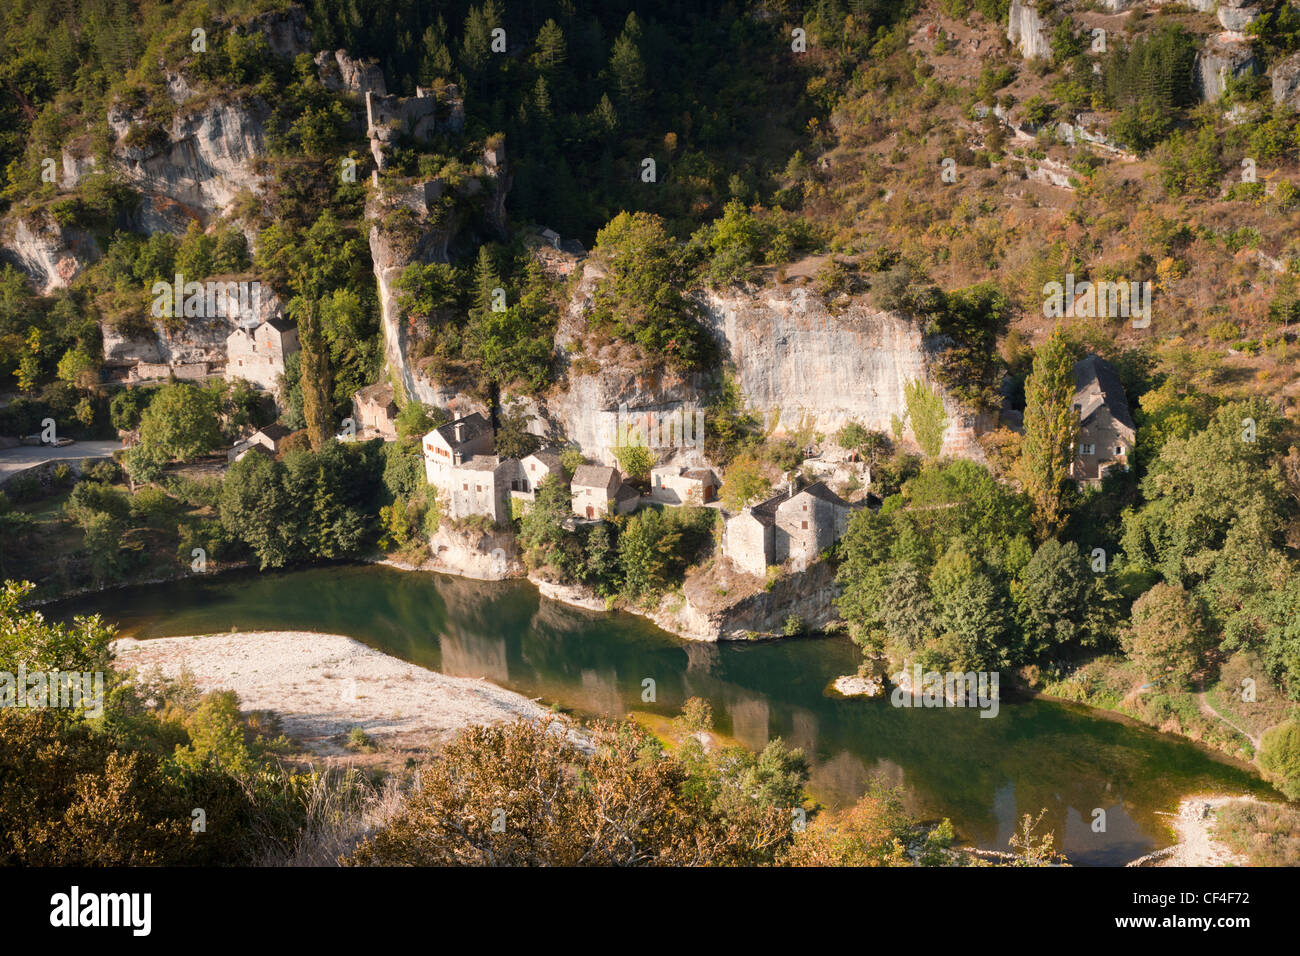 El diminuto pueblo abandonado de Castelbouc y su castillo en el Tarn Gorge, Languedoc-Rosellón. Foto de stock